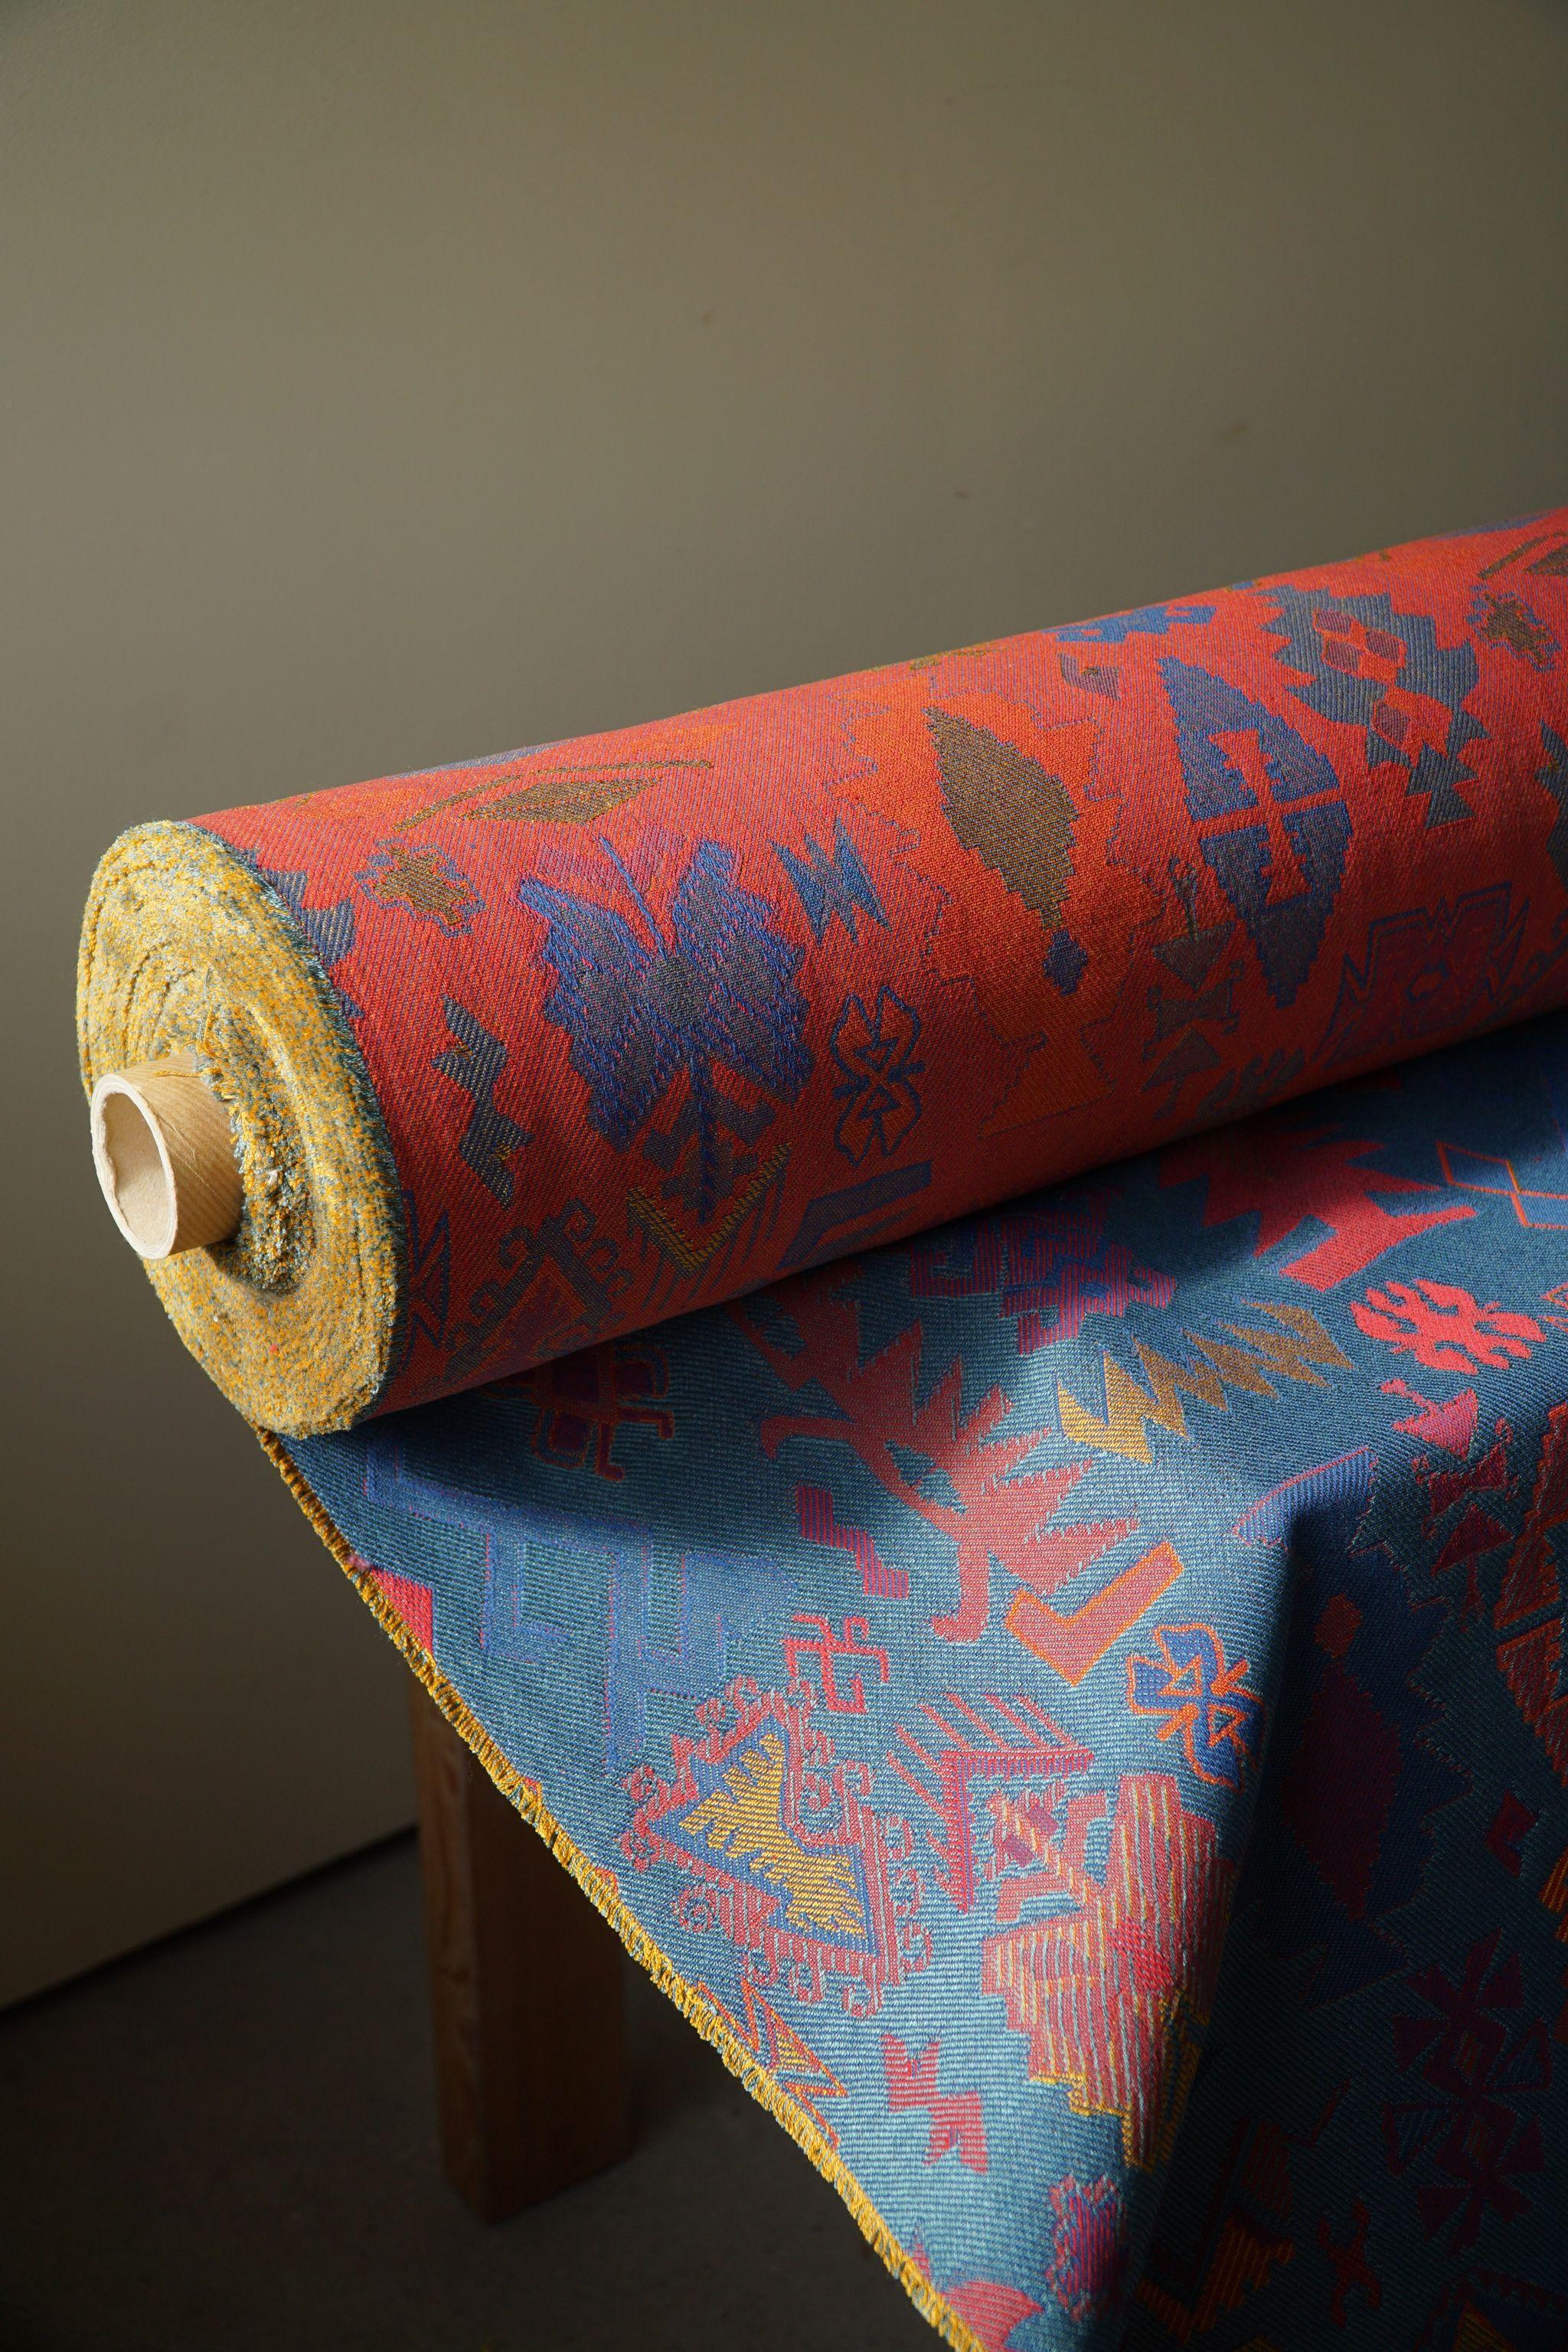 Merveilleux tissu obélisque vintage avec ornements Art Nouveau dans un mélange de coton et de viscose. Magnifique combinaison de couleurs : bleu, orange, rouge et violet. Acquis dans les années 80. Une belle opportunité d'avoir vos meubles vintage